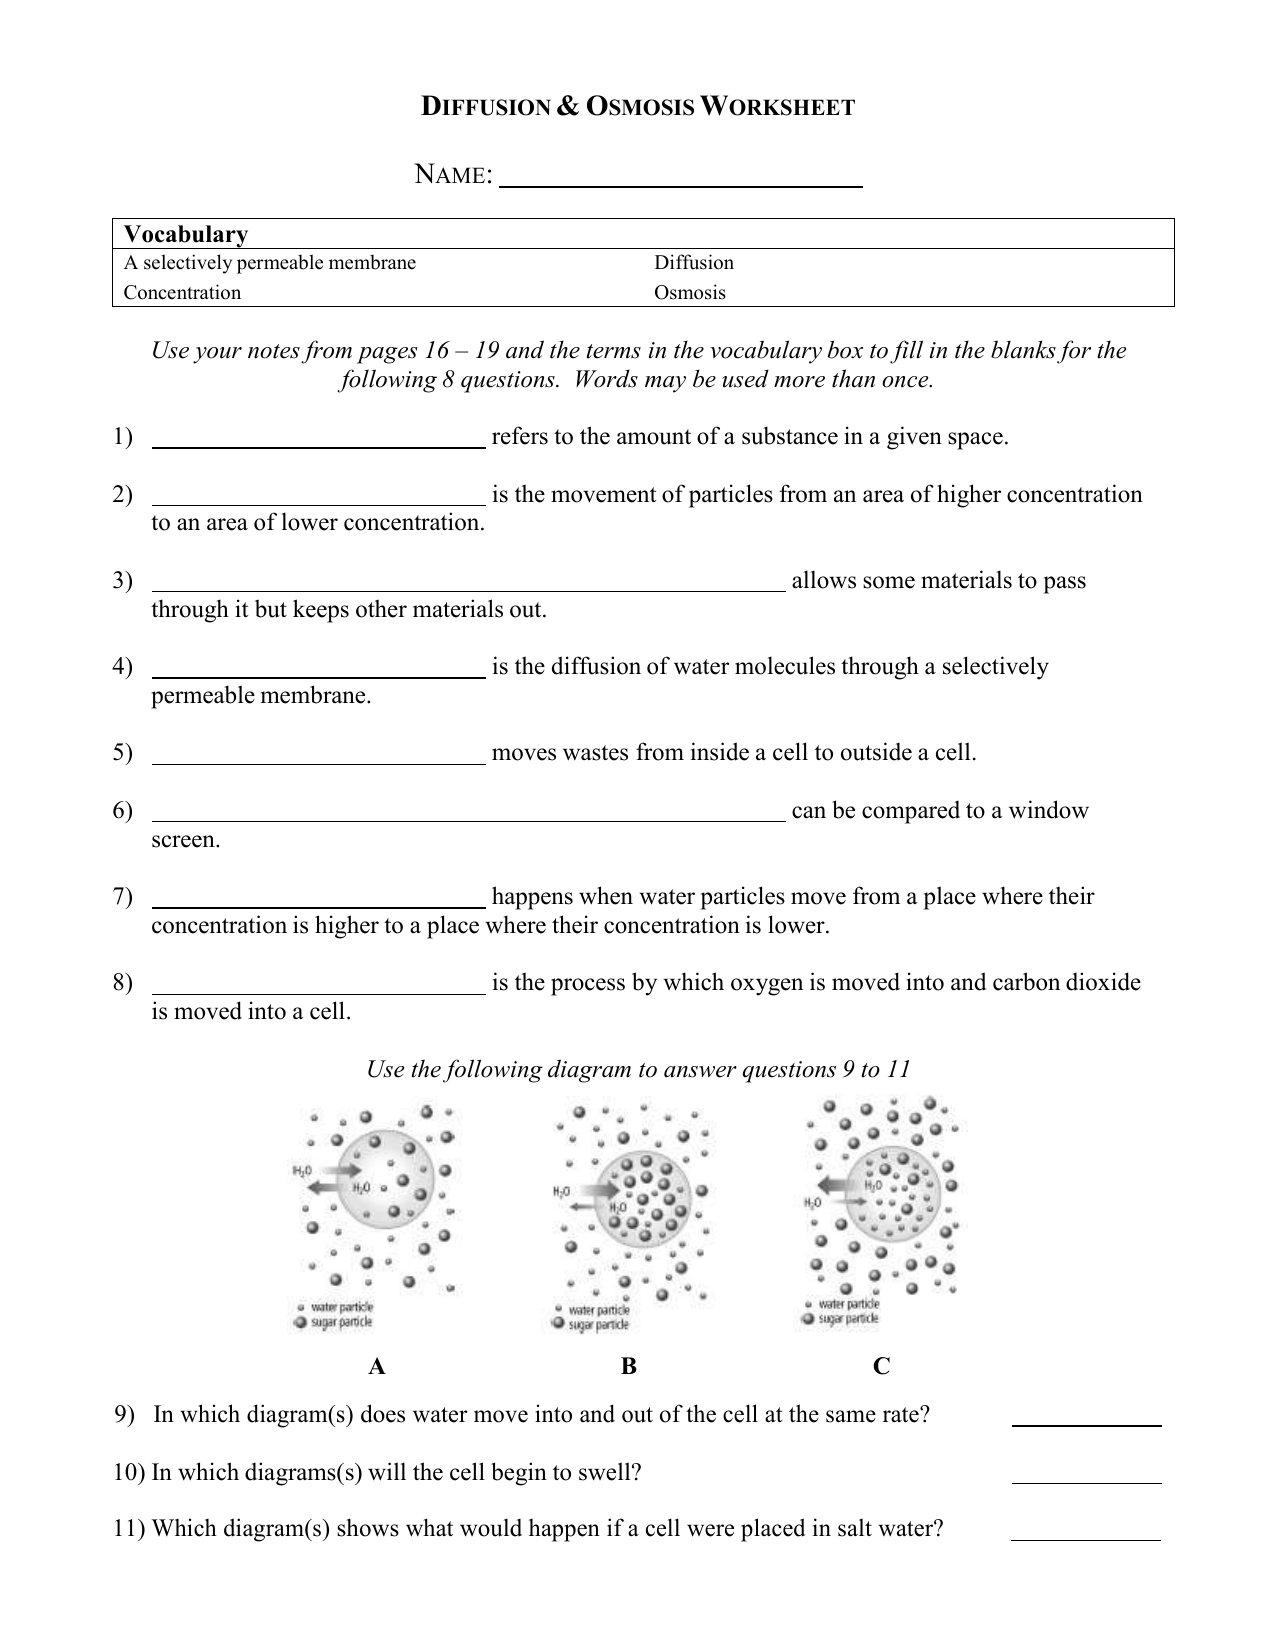 Diffusion-Osmosis-Worksheet 20 Throughout Diffusion And Osmosis Worksheet